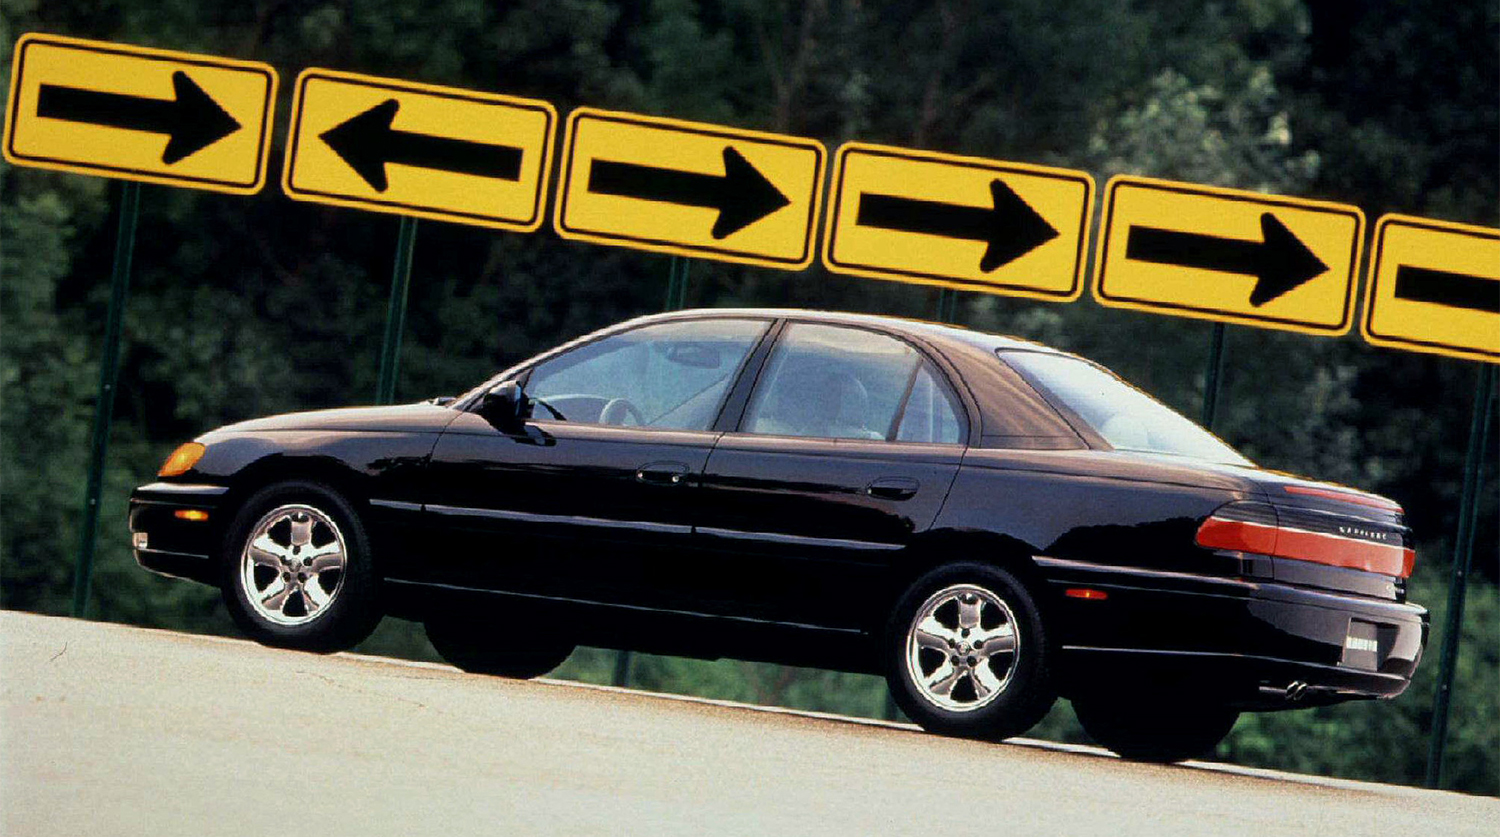 Cadillac Catera 1997 года — перелицованный Opel Omega немецкого производства, очередная попытка Cadillac захватить молодежную аудиторию
